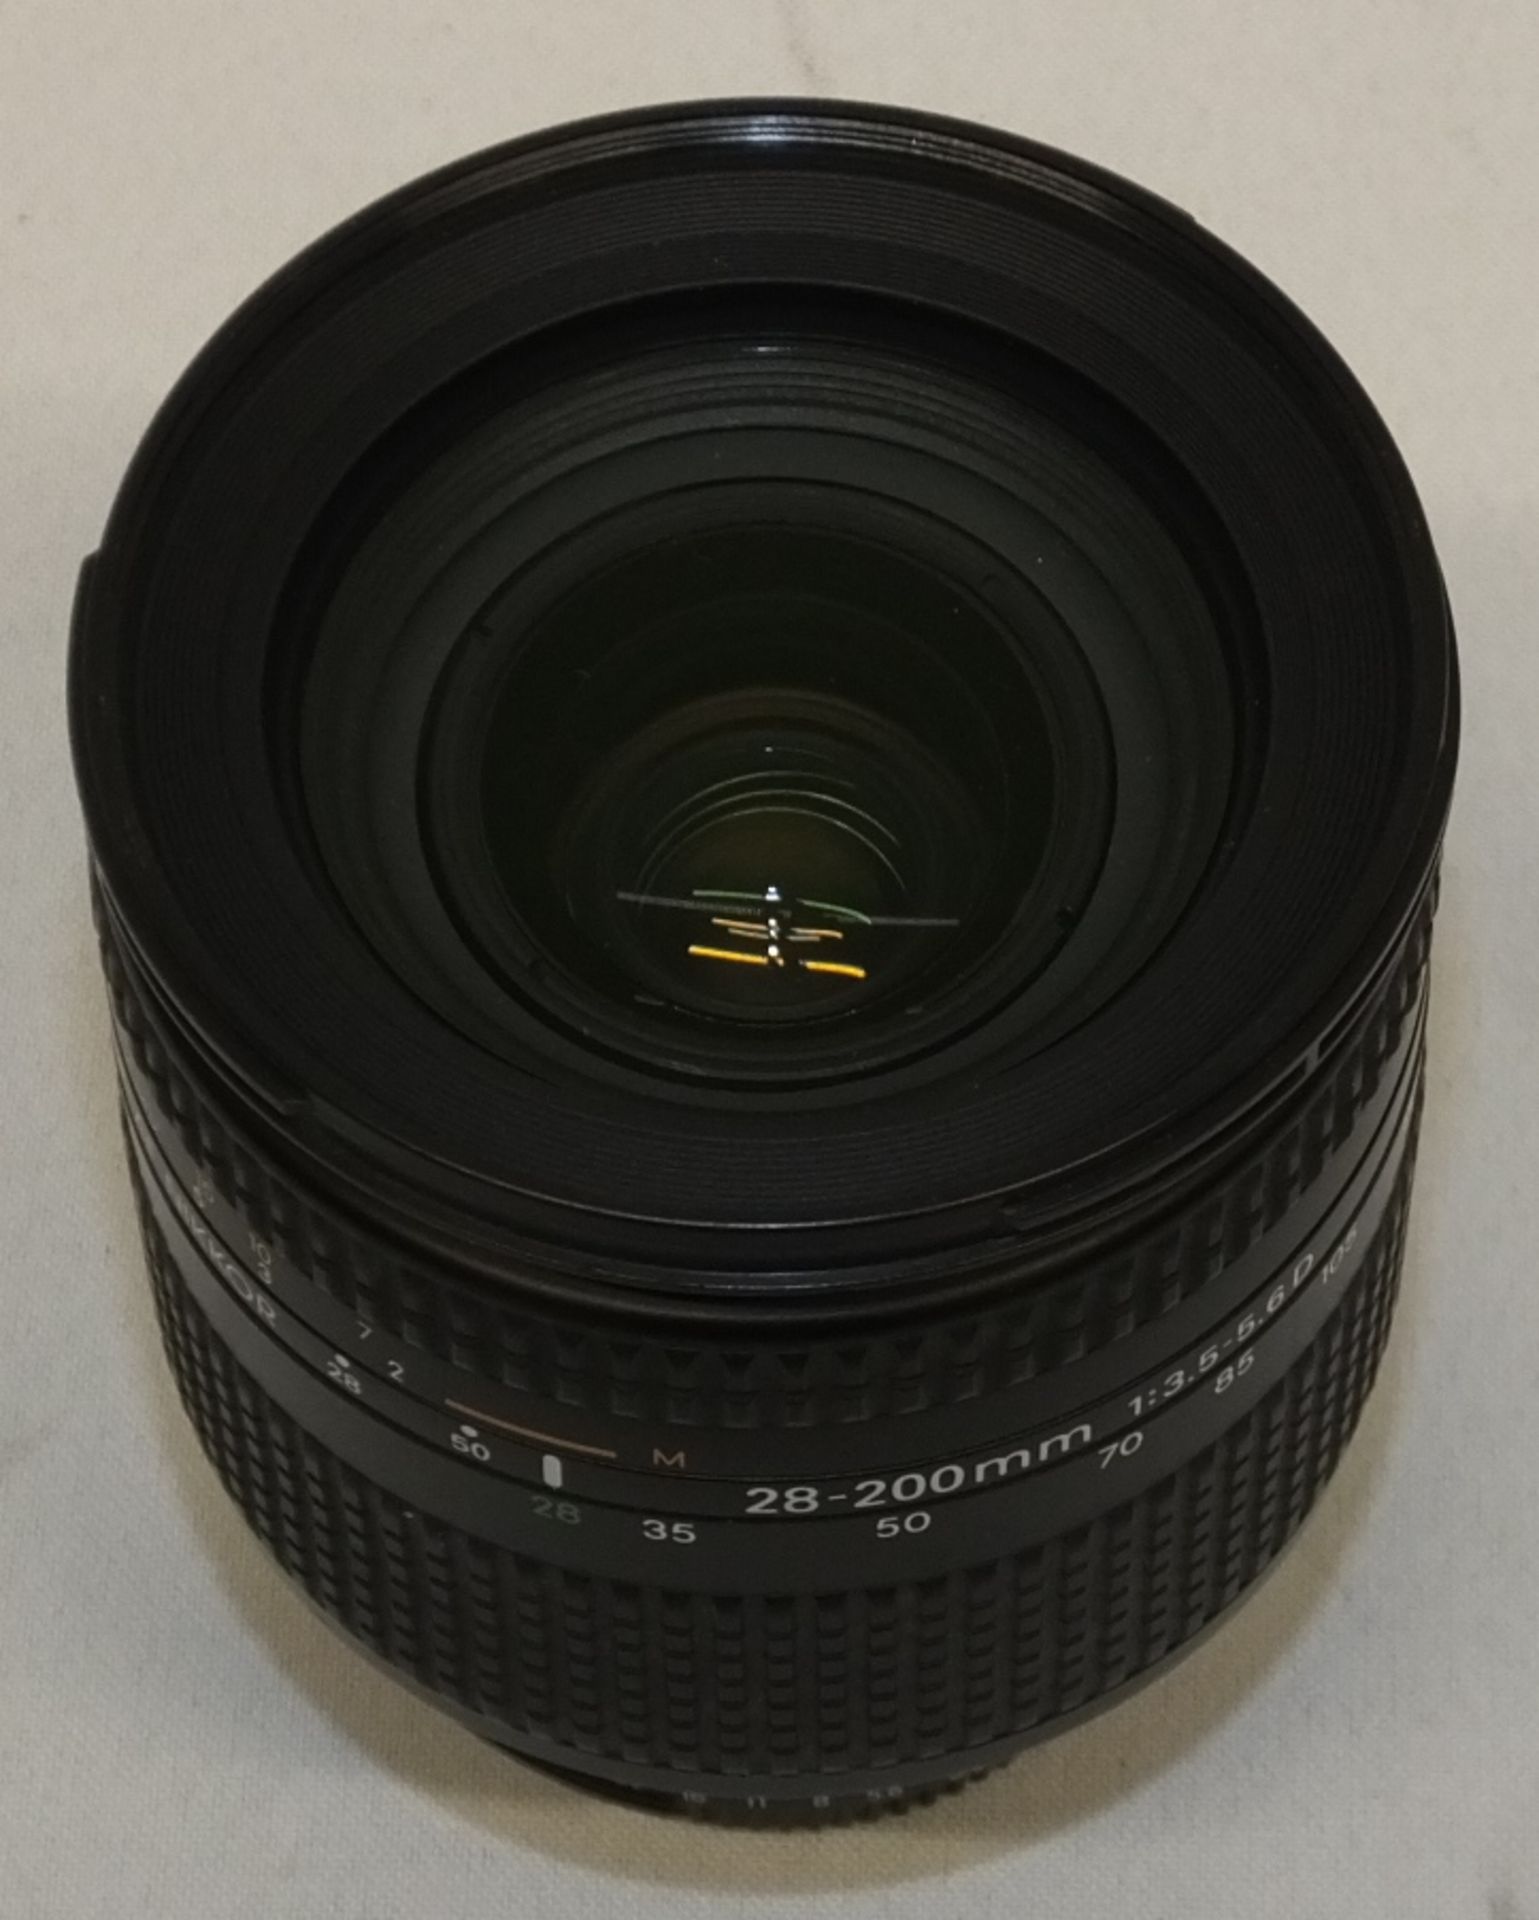 Nikon AF Nikkor 28-200mm 1:3.5-5.6 D Lens (only one lens cover) with HOYA HMC 72mm UV(O) Filter - Image 3 of 6